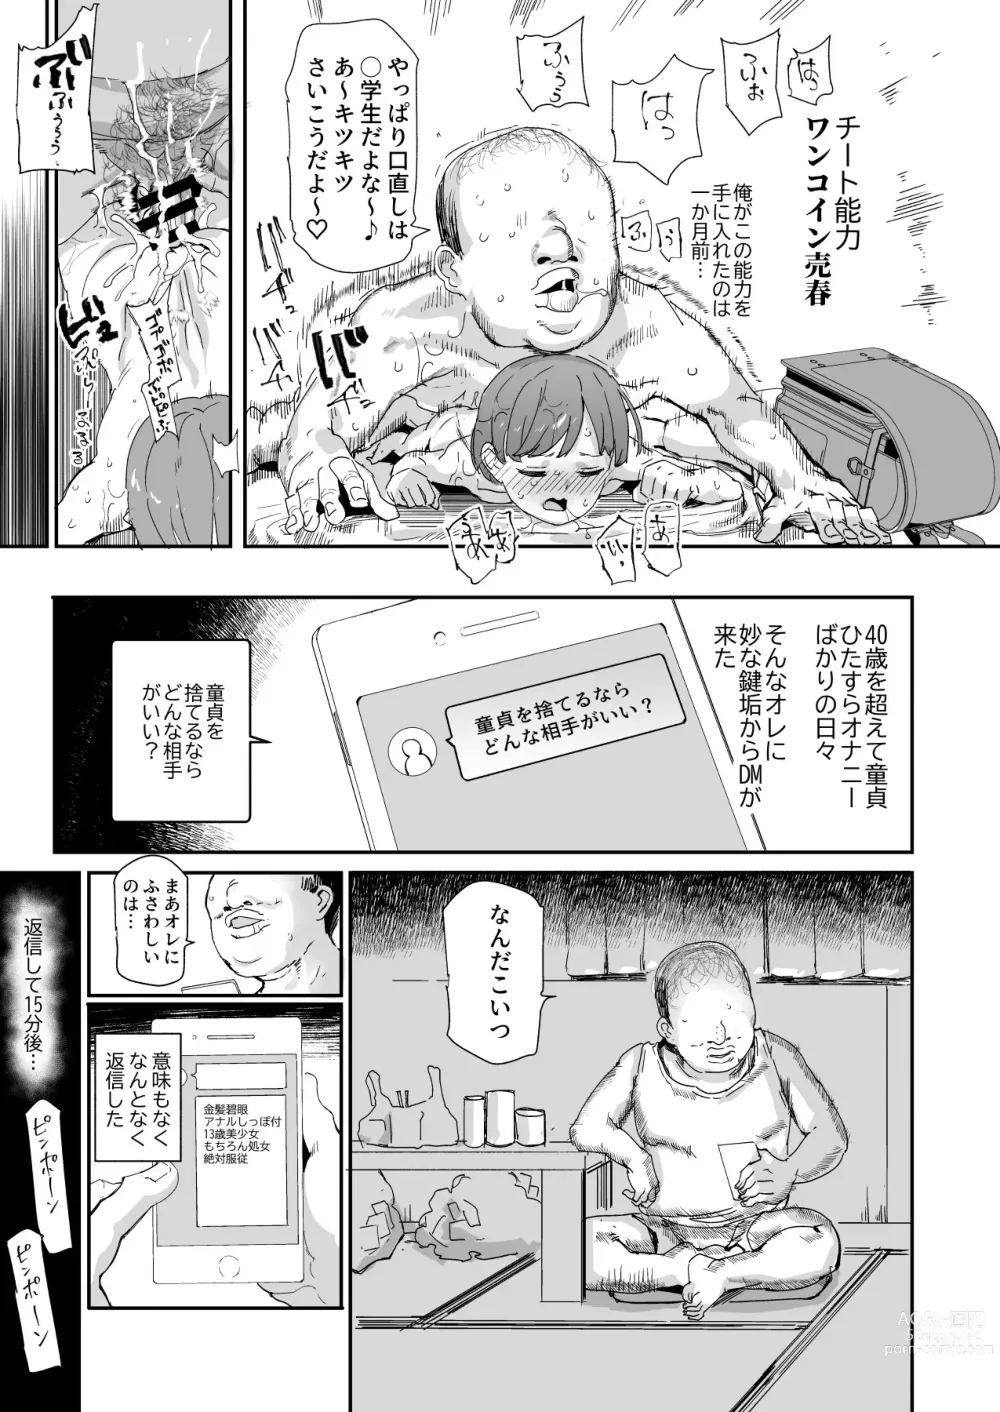 Page 13 of doujinshi 500-en de Baishun Kakutei Cheat